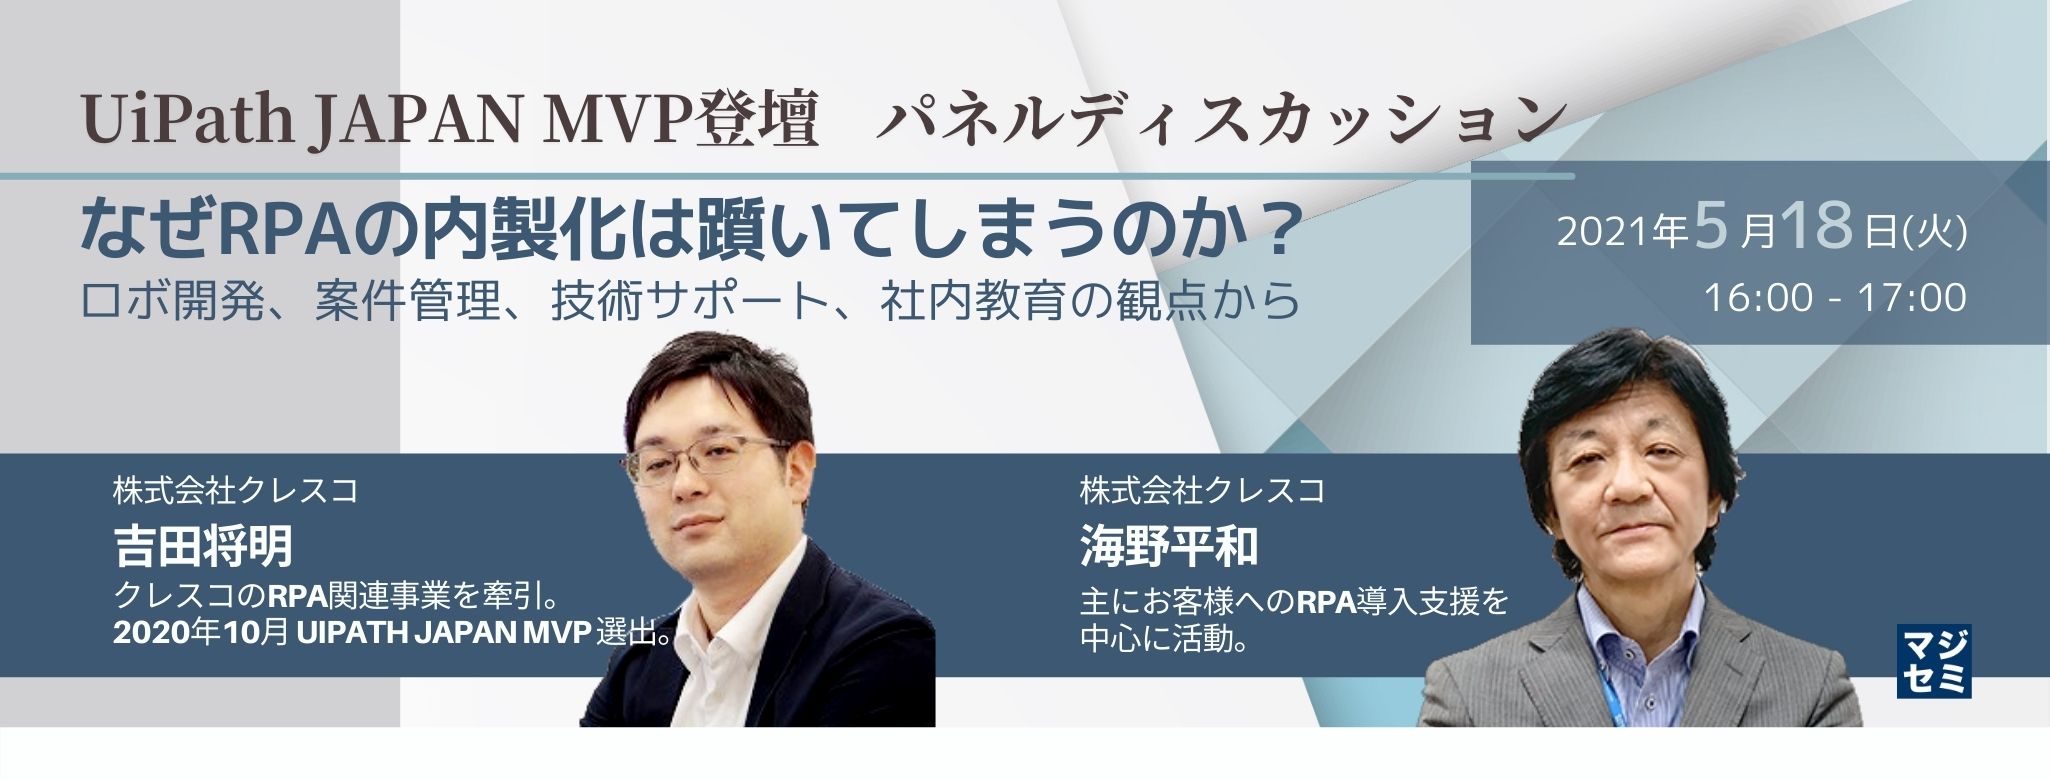  【UiPath JAPAN MVP登壇/パネルディスカッション】なぜRPAの内製化は躓いてしまうのか 〜ロボ開発、案件管理、技術サポート、社内教育の観点から〜